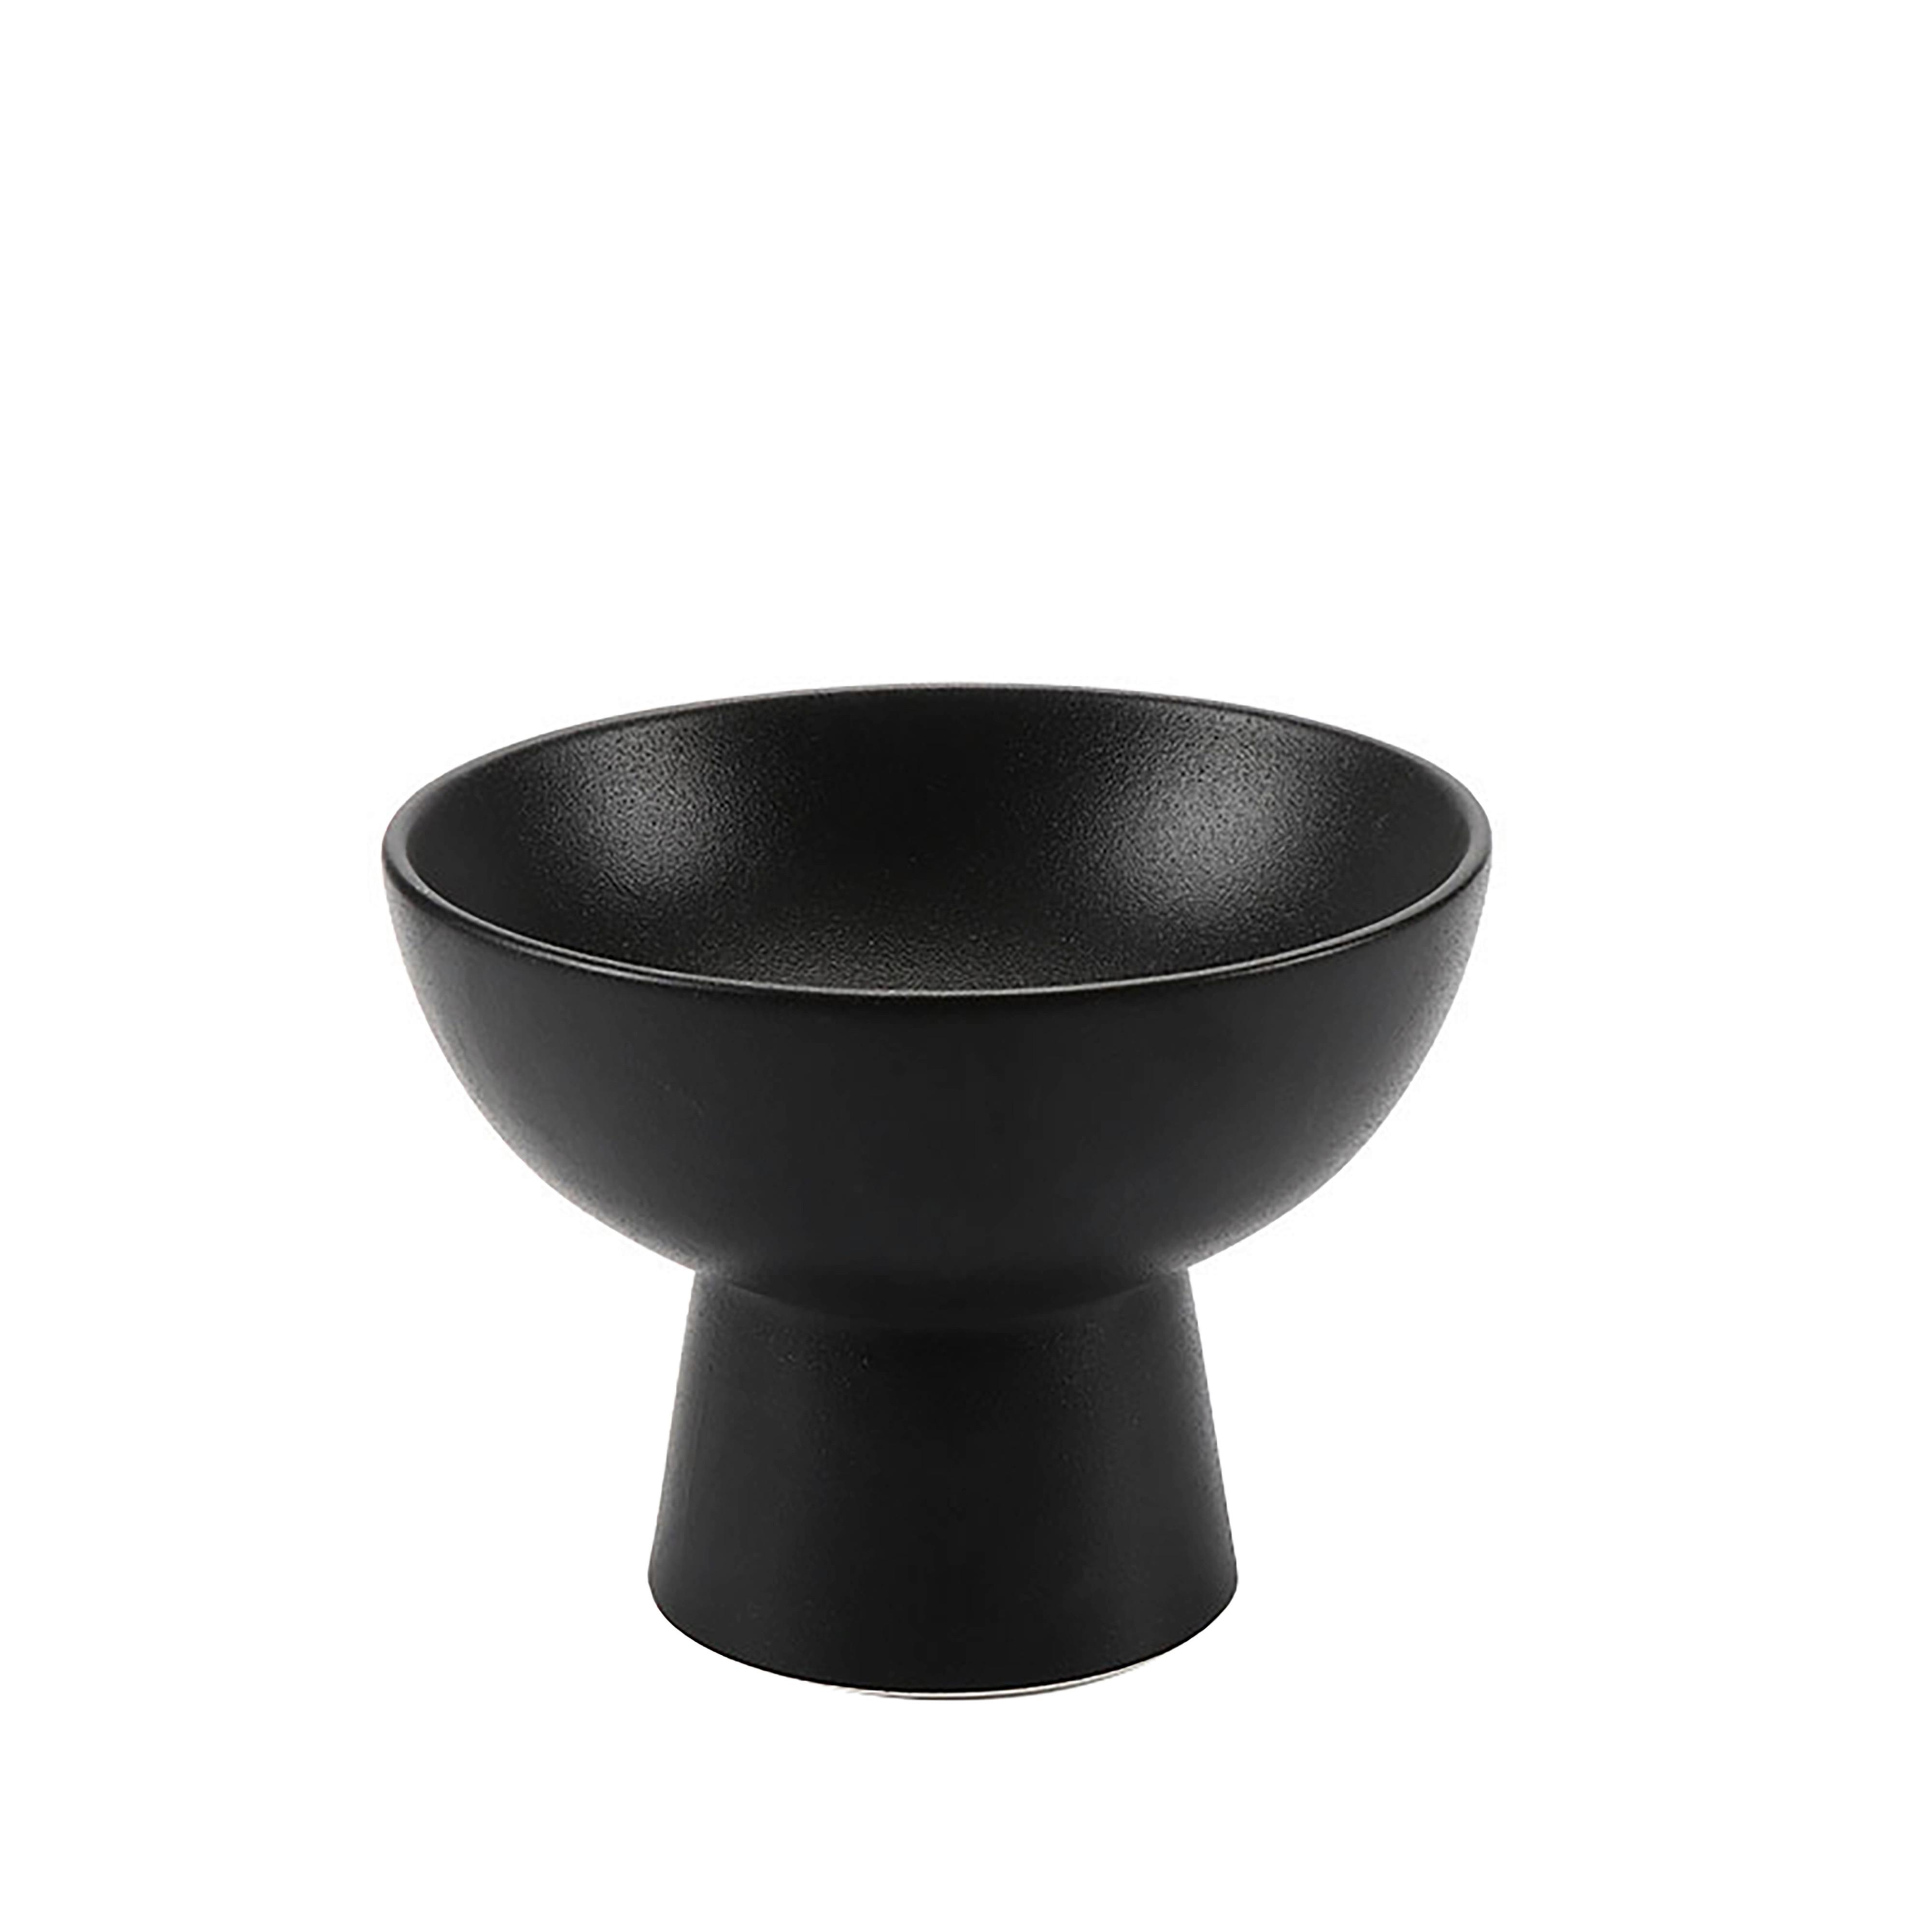 Dekorační Miska Noir - černá, keramika (15,3/11,4cm) - Modern Living